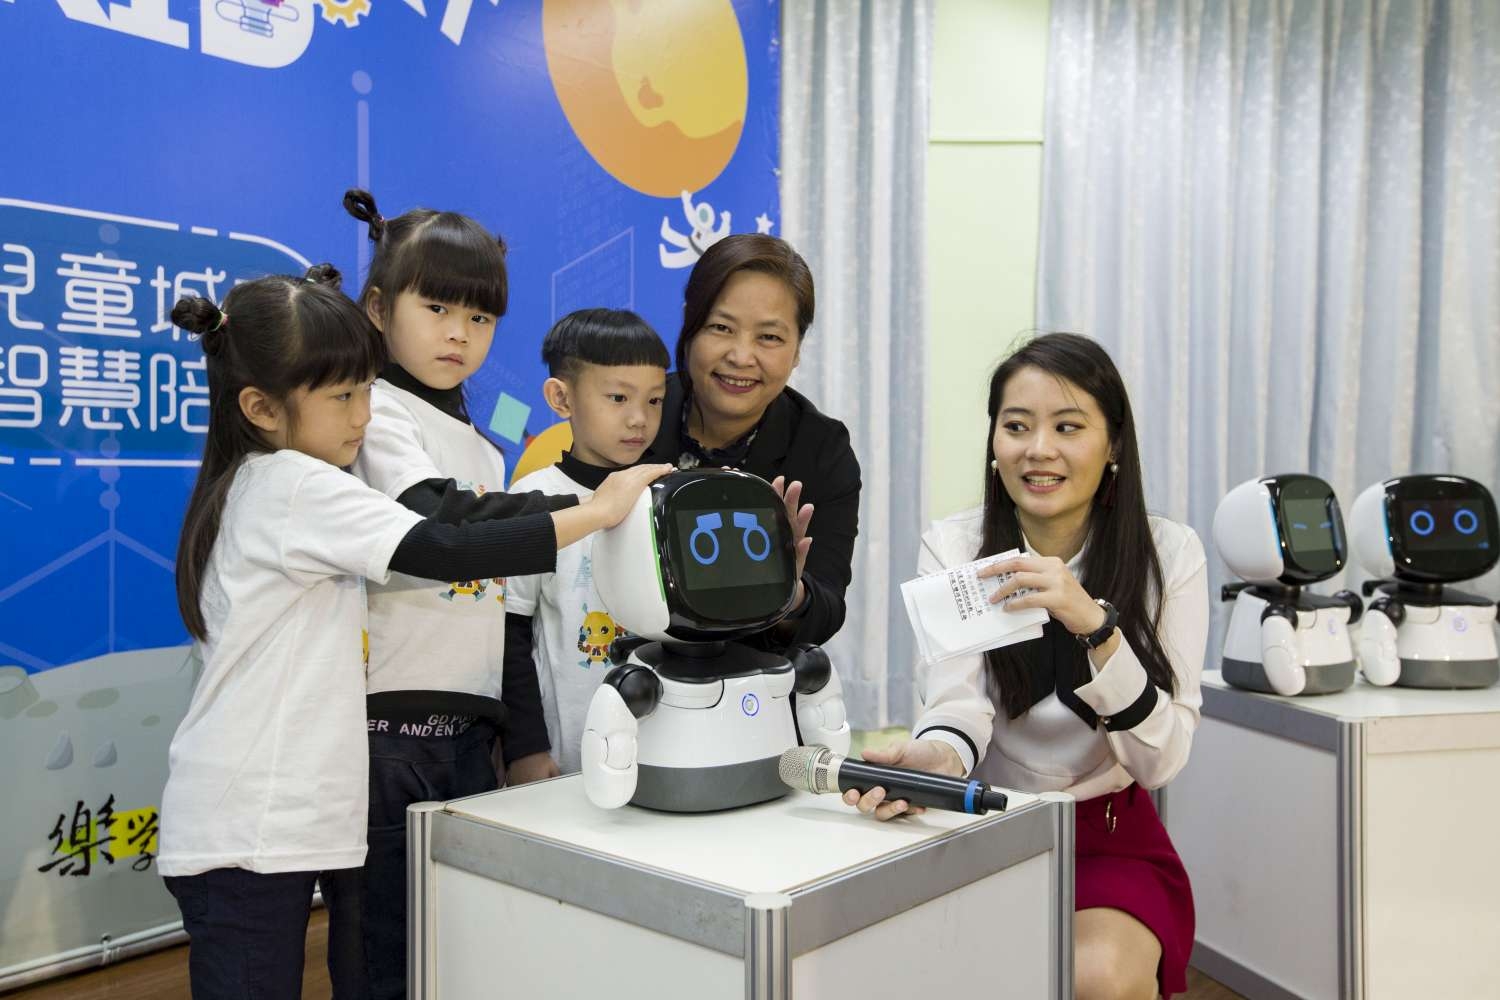 智慧城市再升級 AI機器人「凱比同學」前進公幼成孩子學習好夥伴